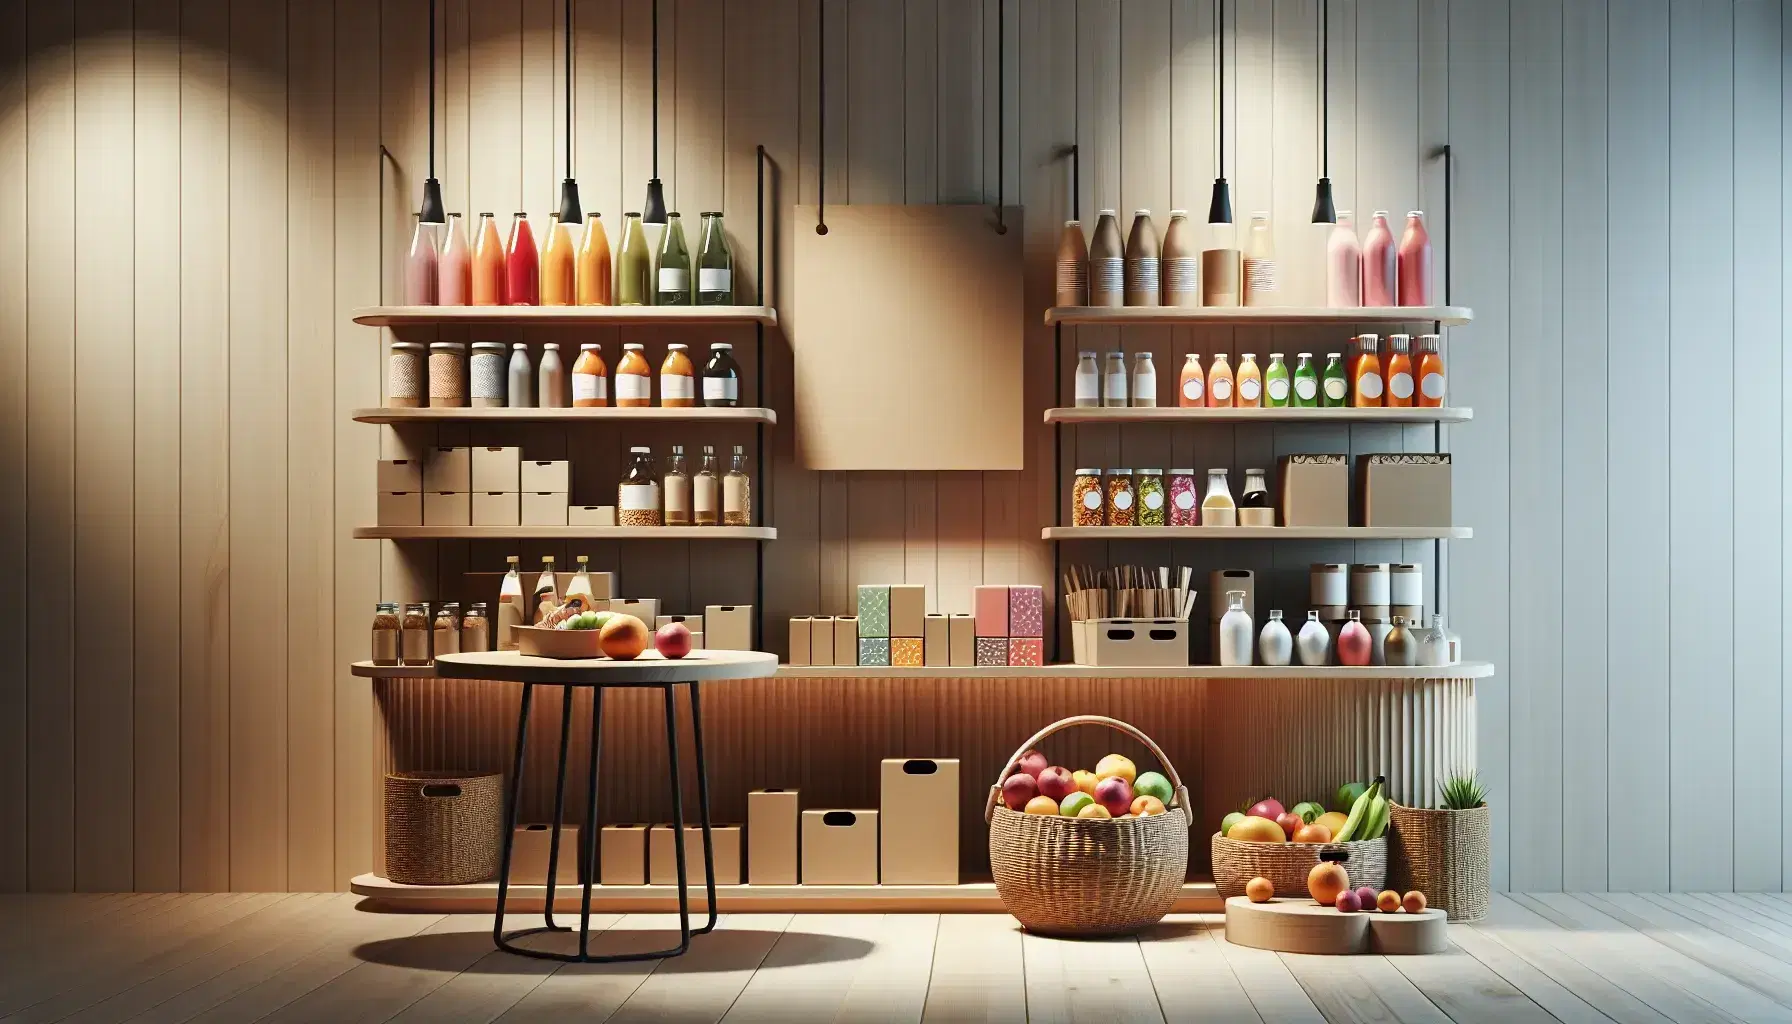 Estante de madera con productos variados, botellas de líquidos coloridos, cajas y contenedores, mesa con frutas frescas y cartel en blanco, persona al fondo.